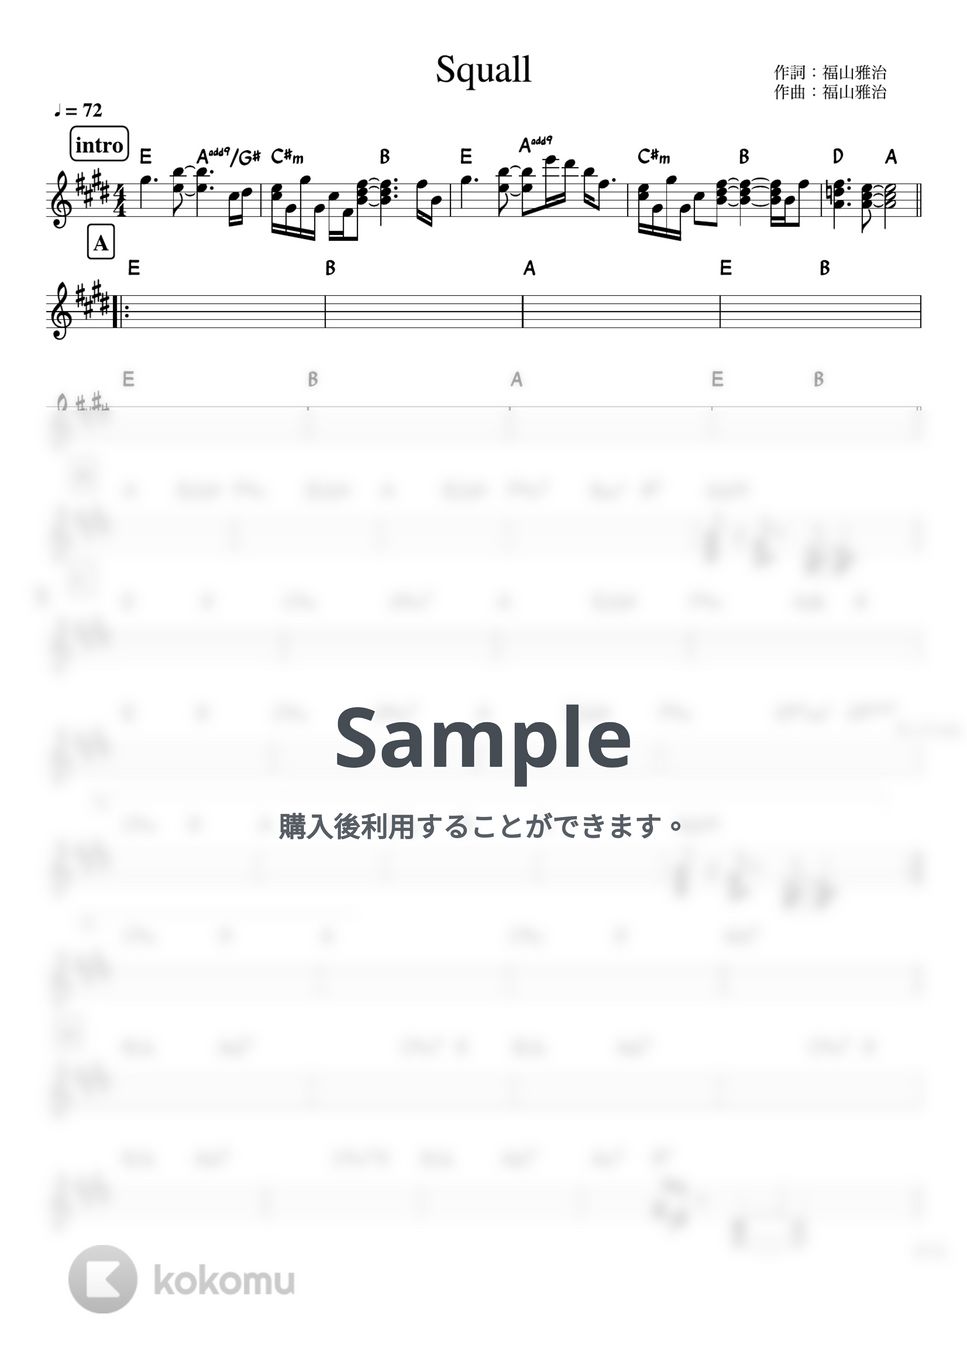 福山雅治 - Squall (バンド用コード譜) by 箱譜屋